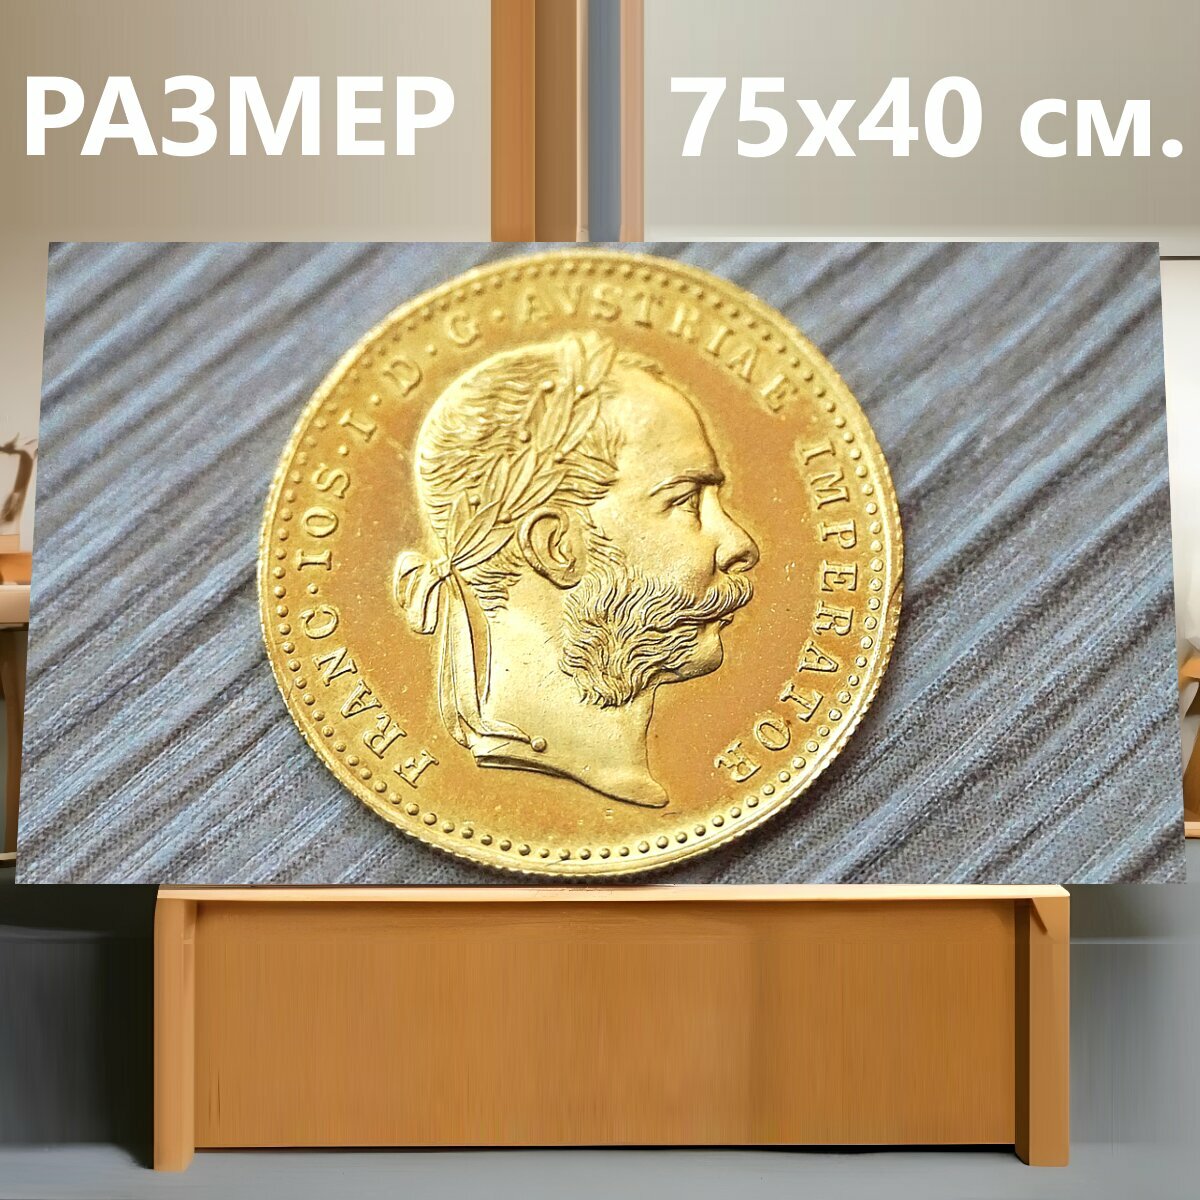 Картина на холсте "Золотая монета, золото, золотой дукат" на подрамнике 75х40 см. для интерьера